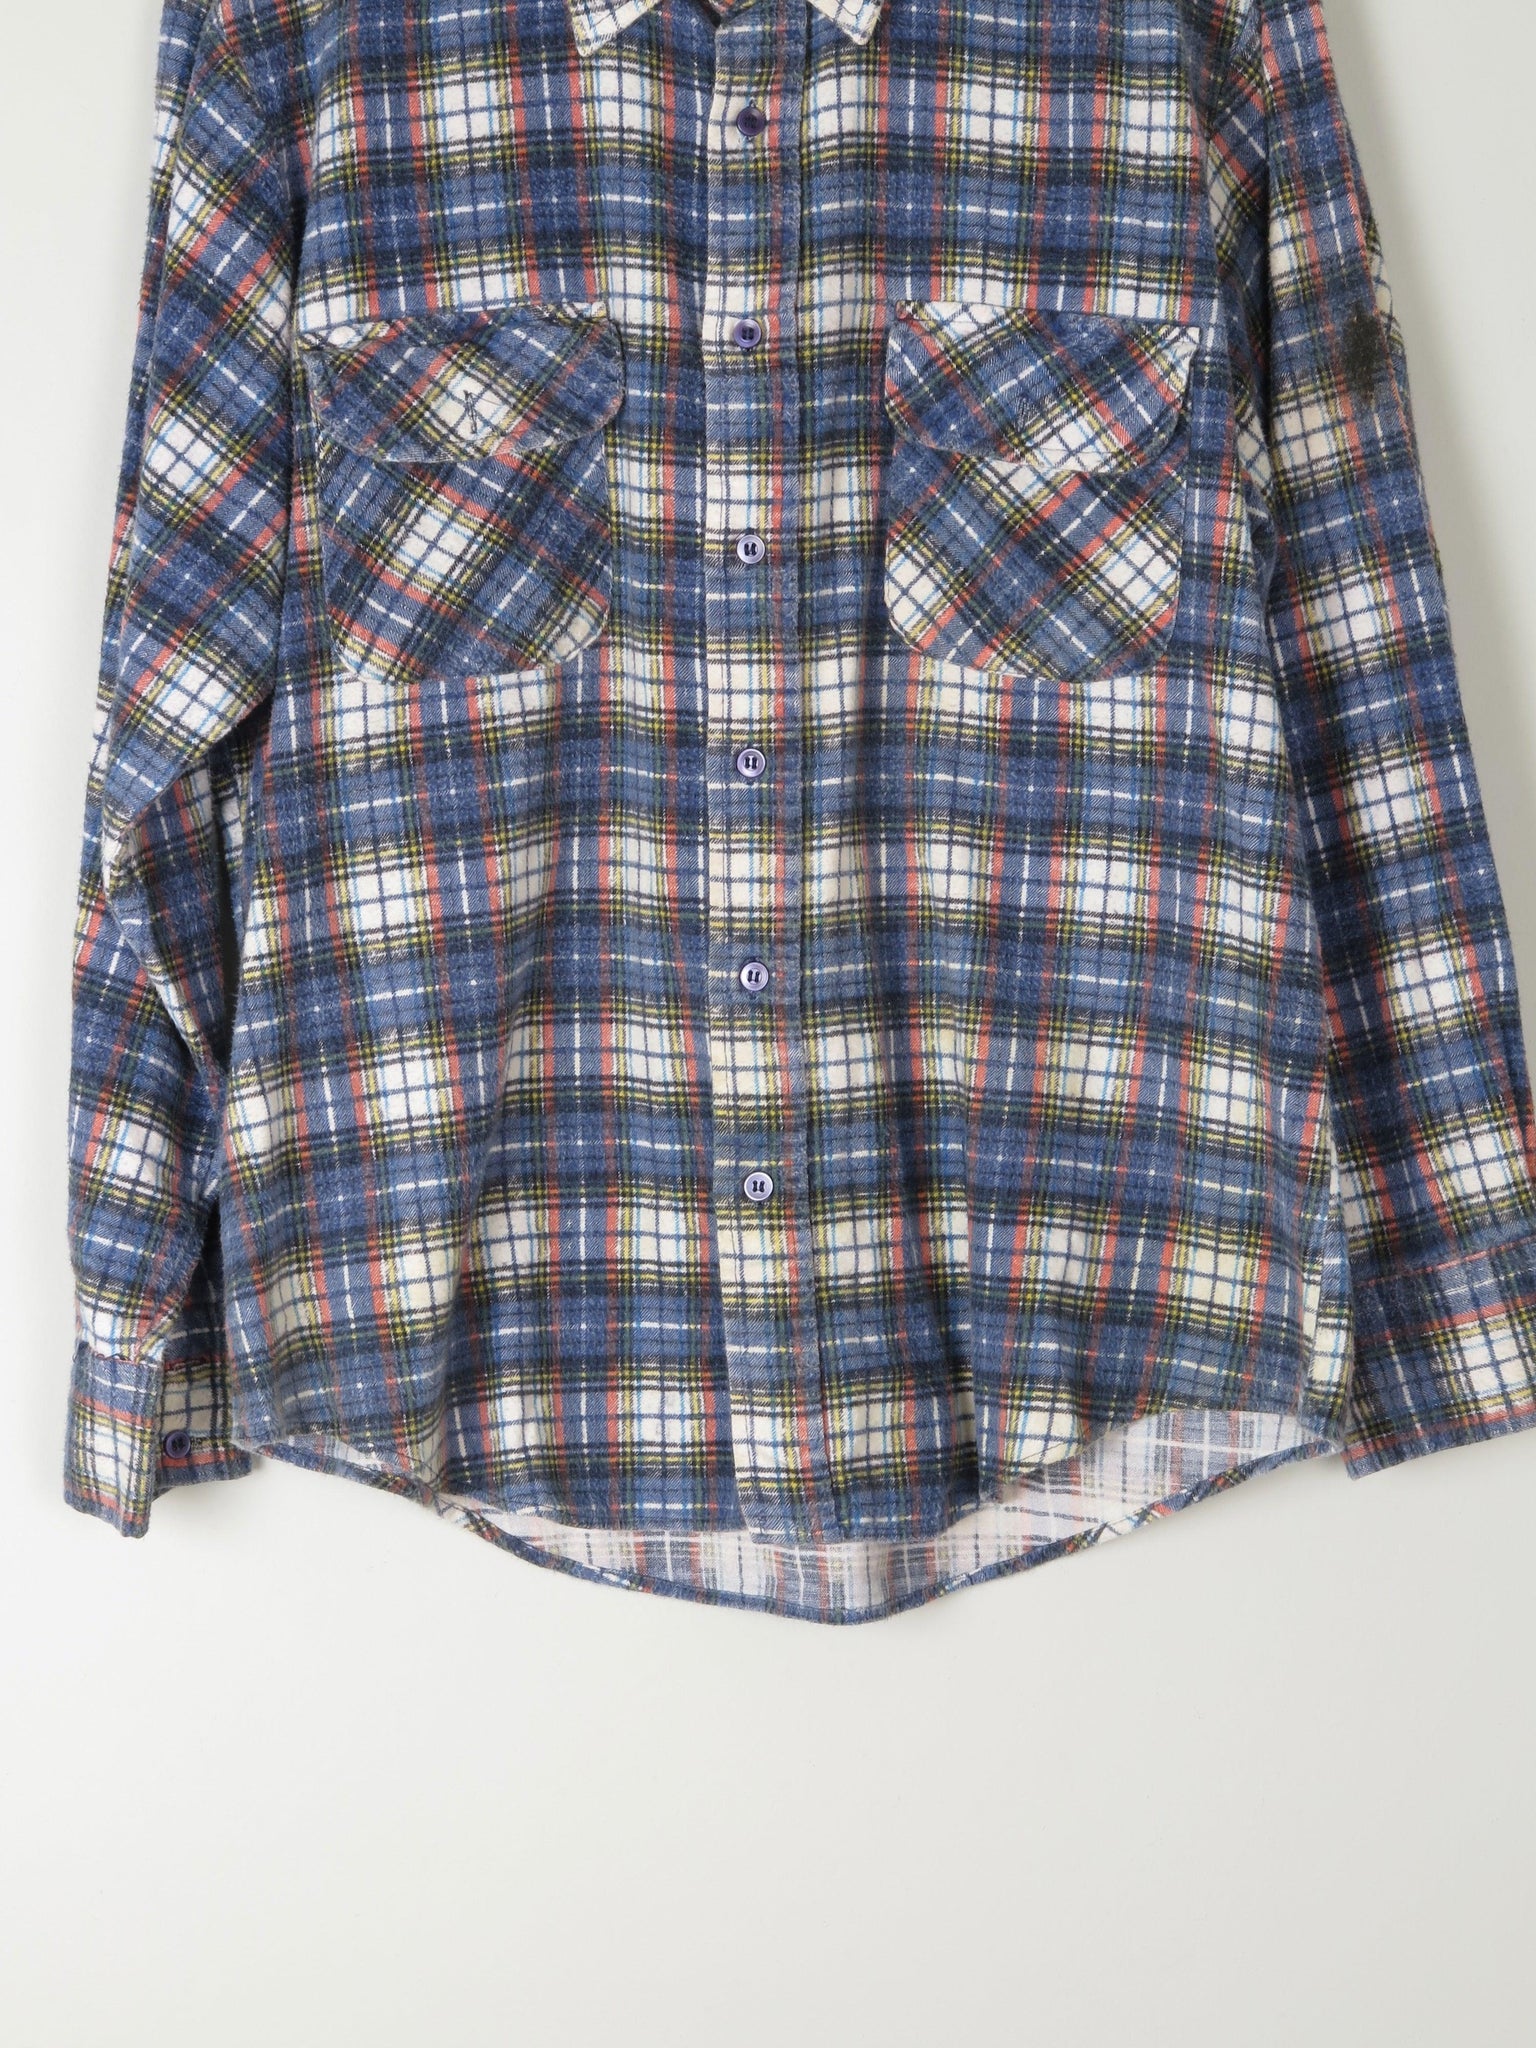 Men's Soft Vintage Flannel Shirt M - The Harlequin